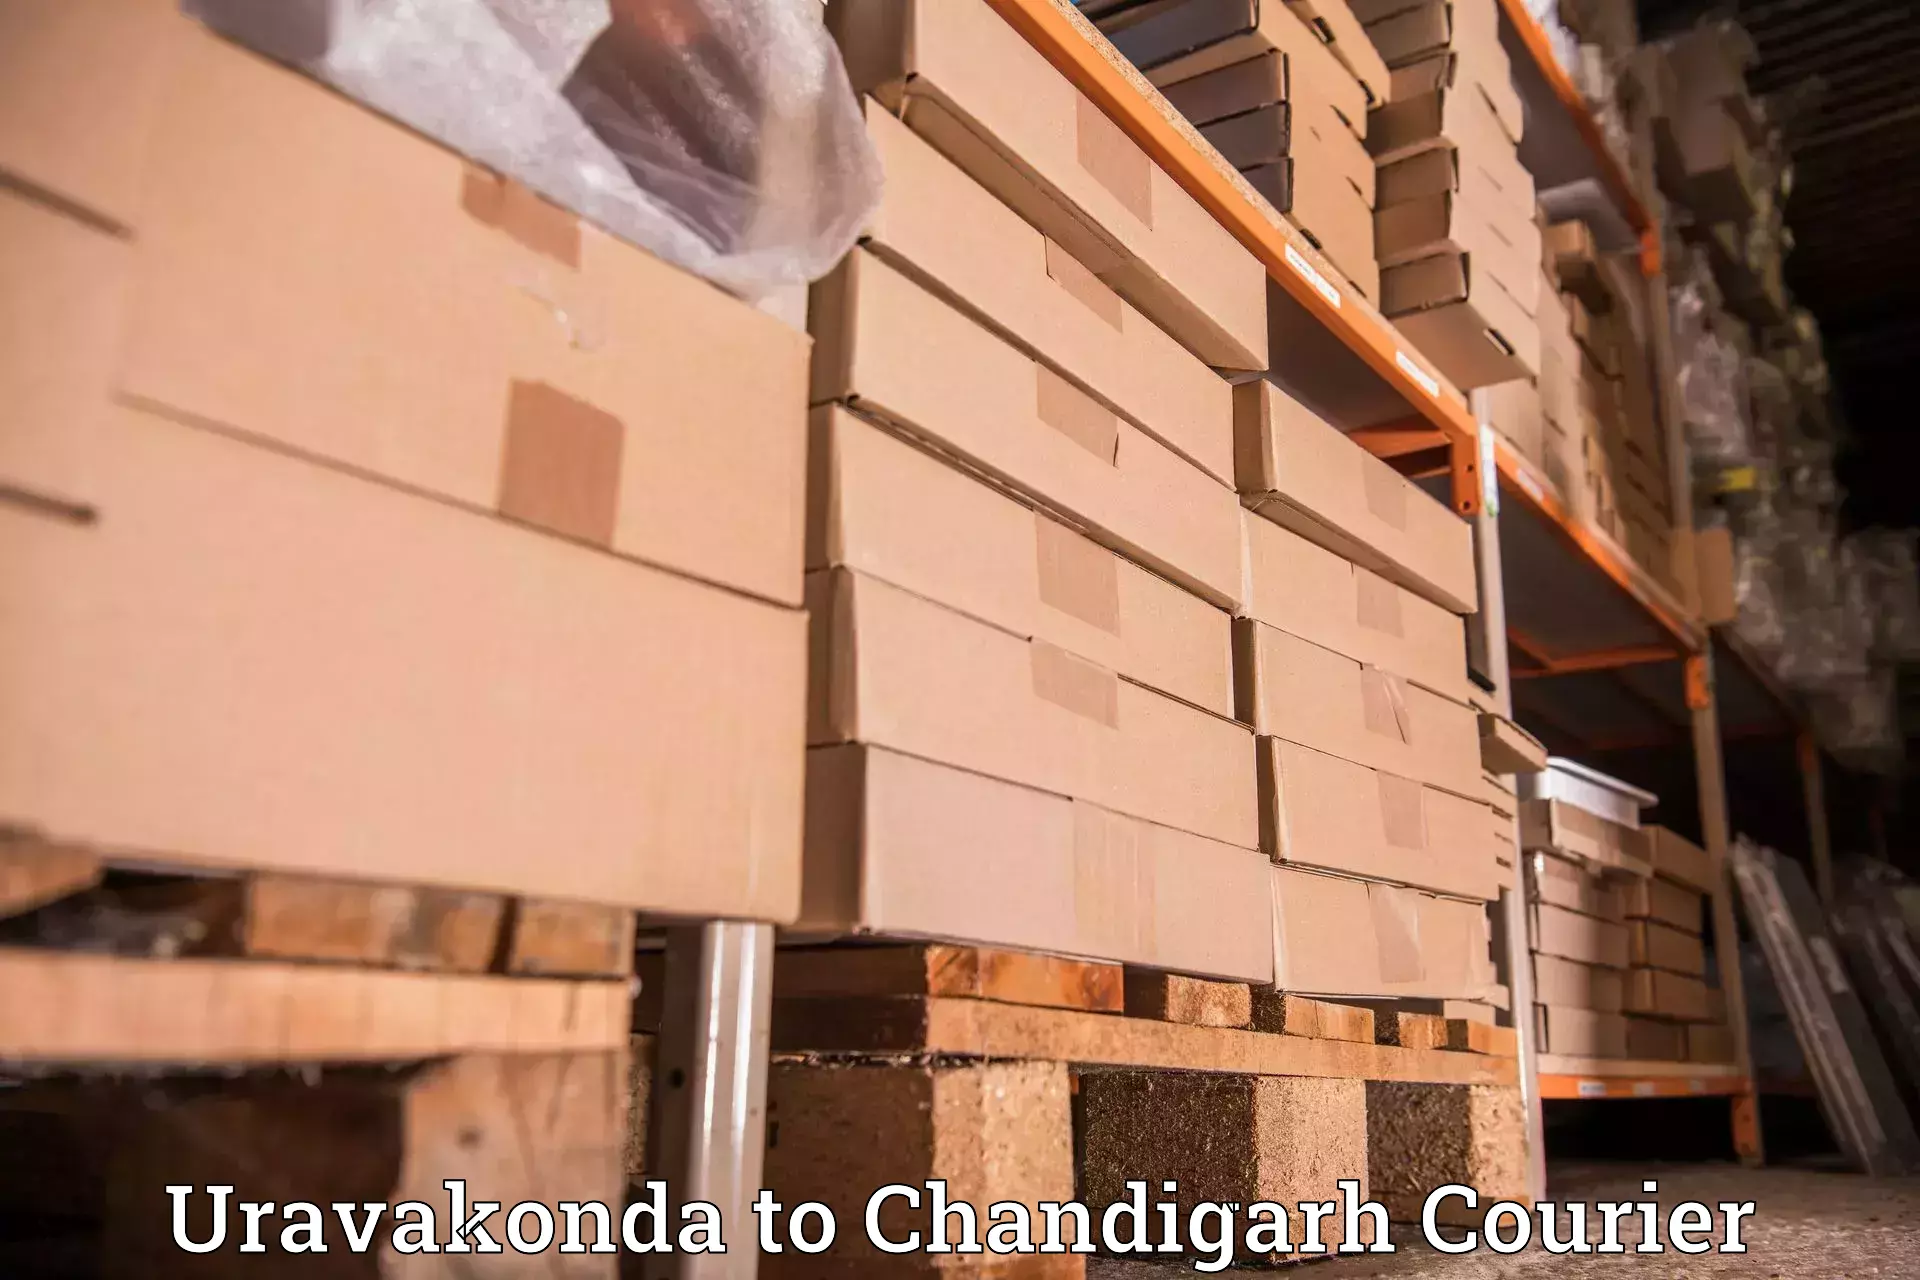 Dynamic courier services in Uravakonda to Chandigarh